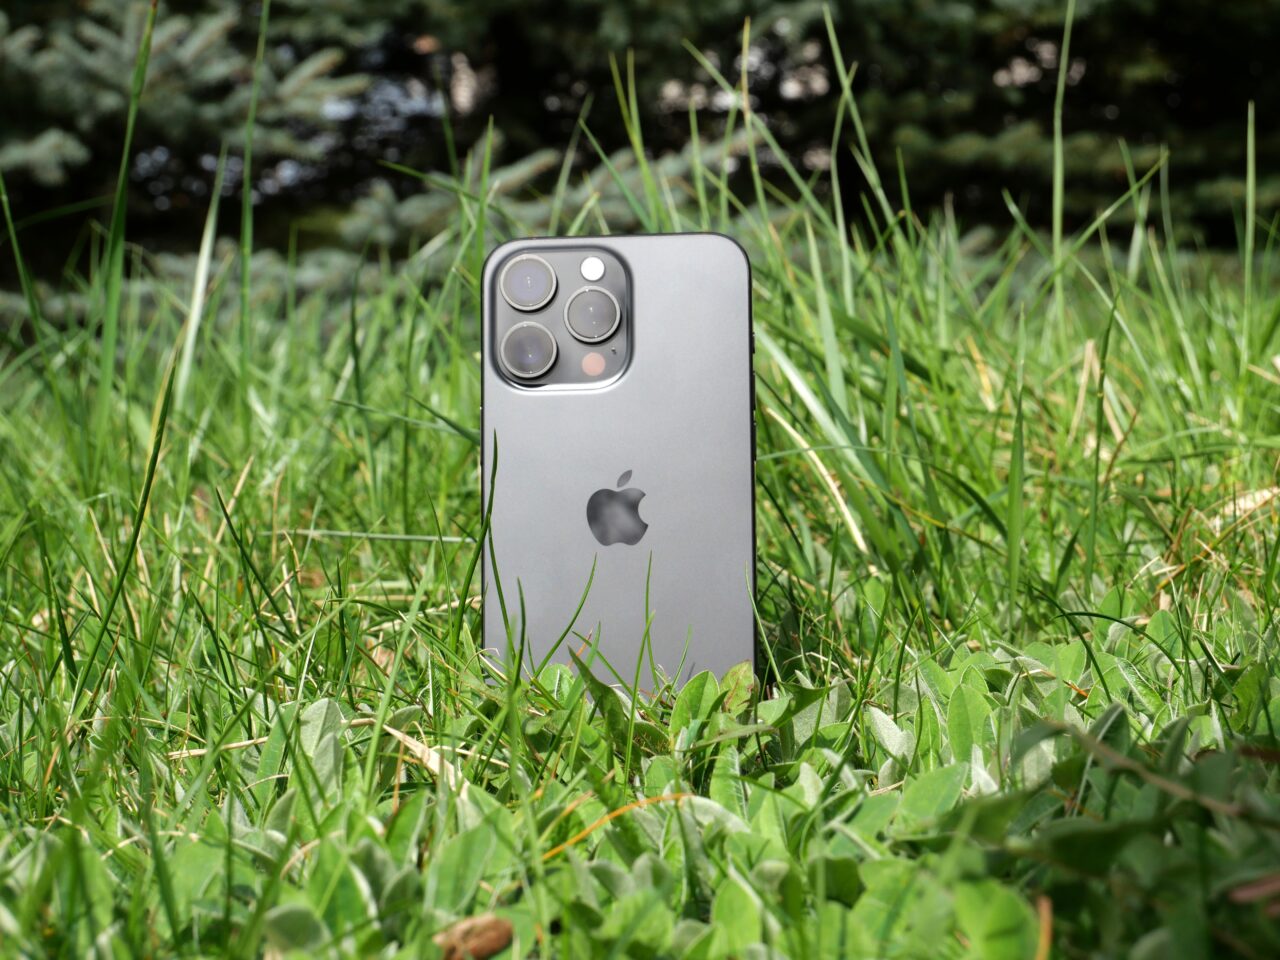 Um smartphone com câmera tripla fica verticalmente em um terreno gramado com vegetação ao fundo.